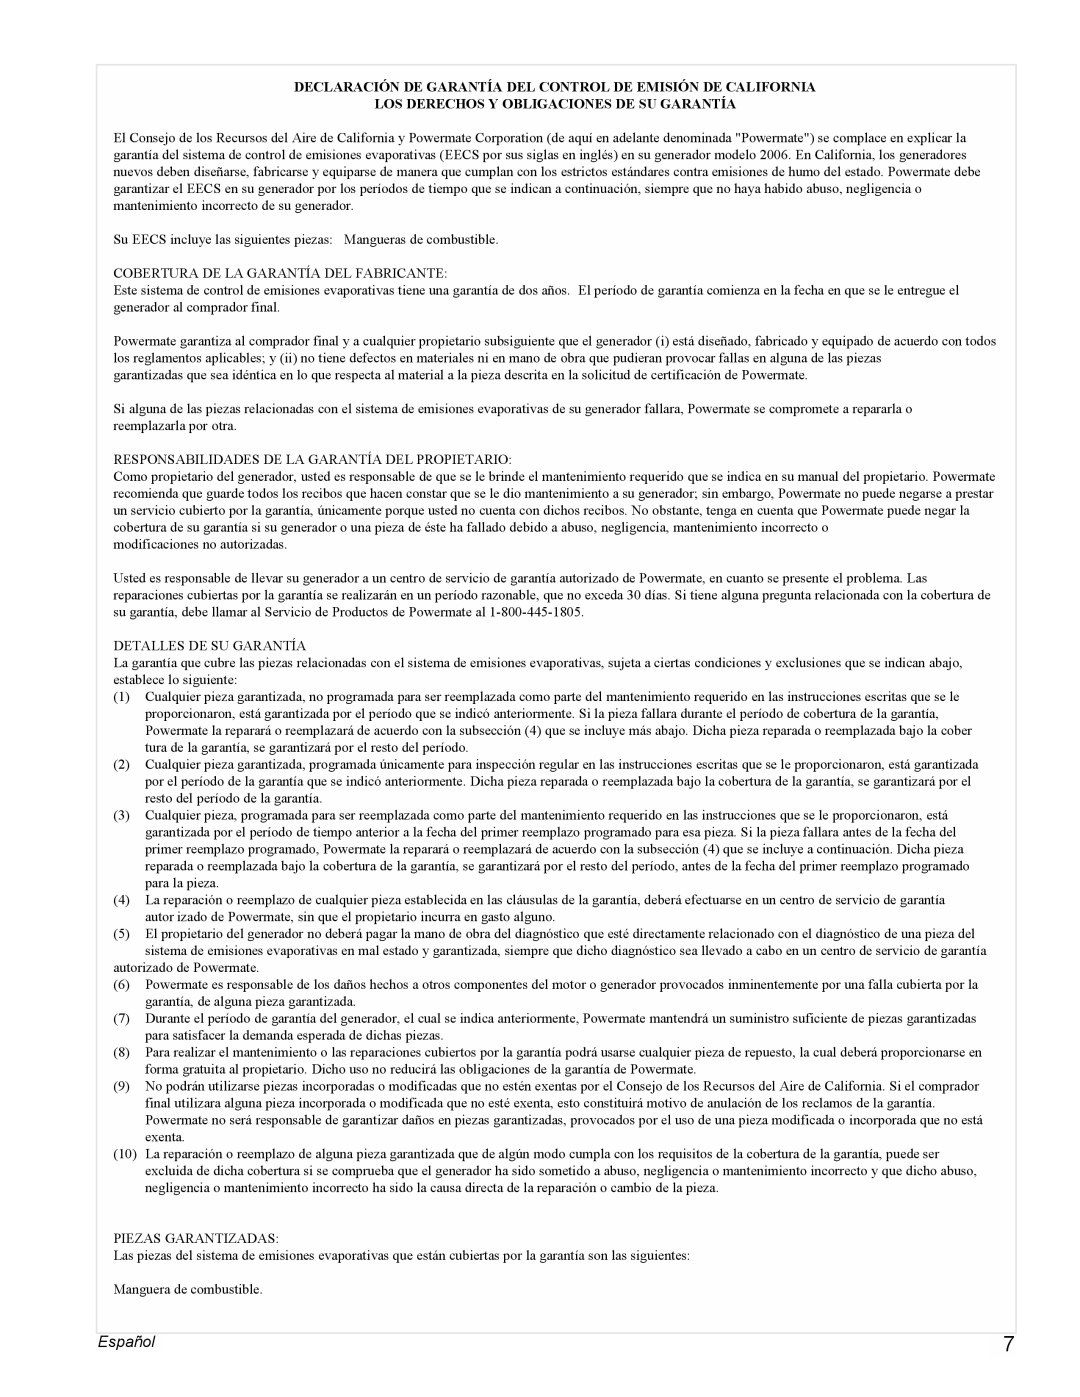 Powermate PMC603250 manual Español, Los Derechos Y Obligaciones De Su Garantía 